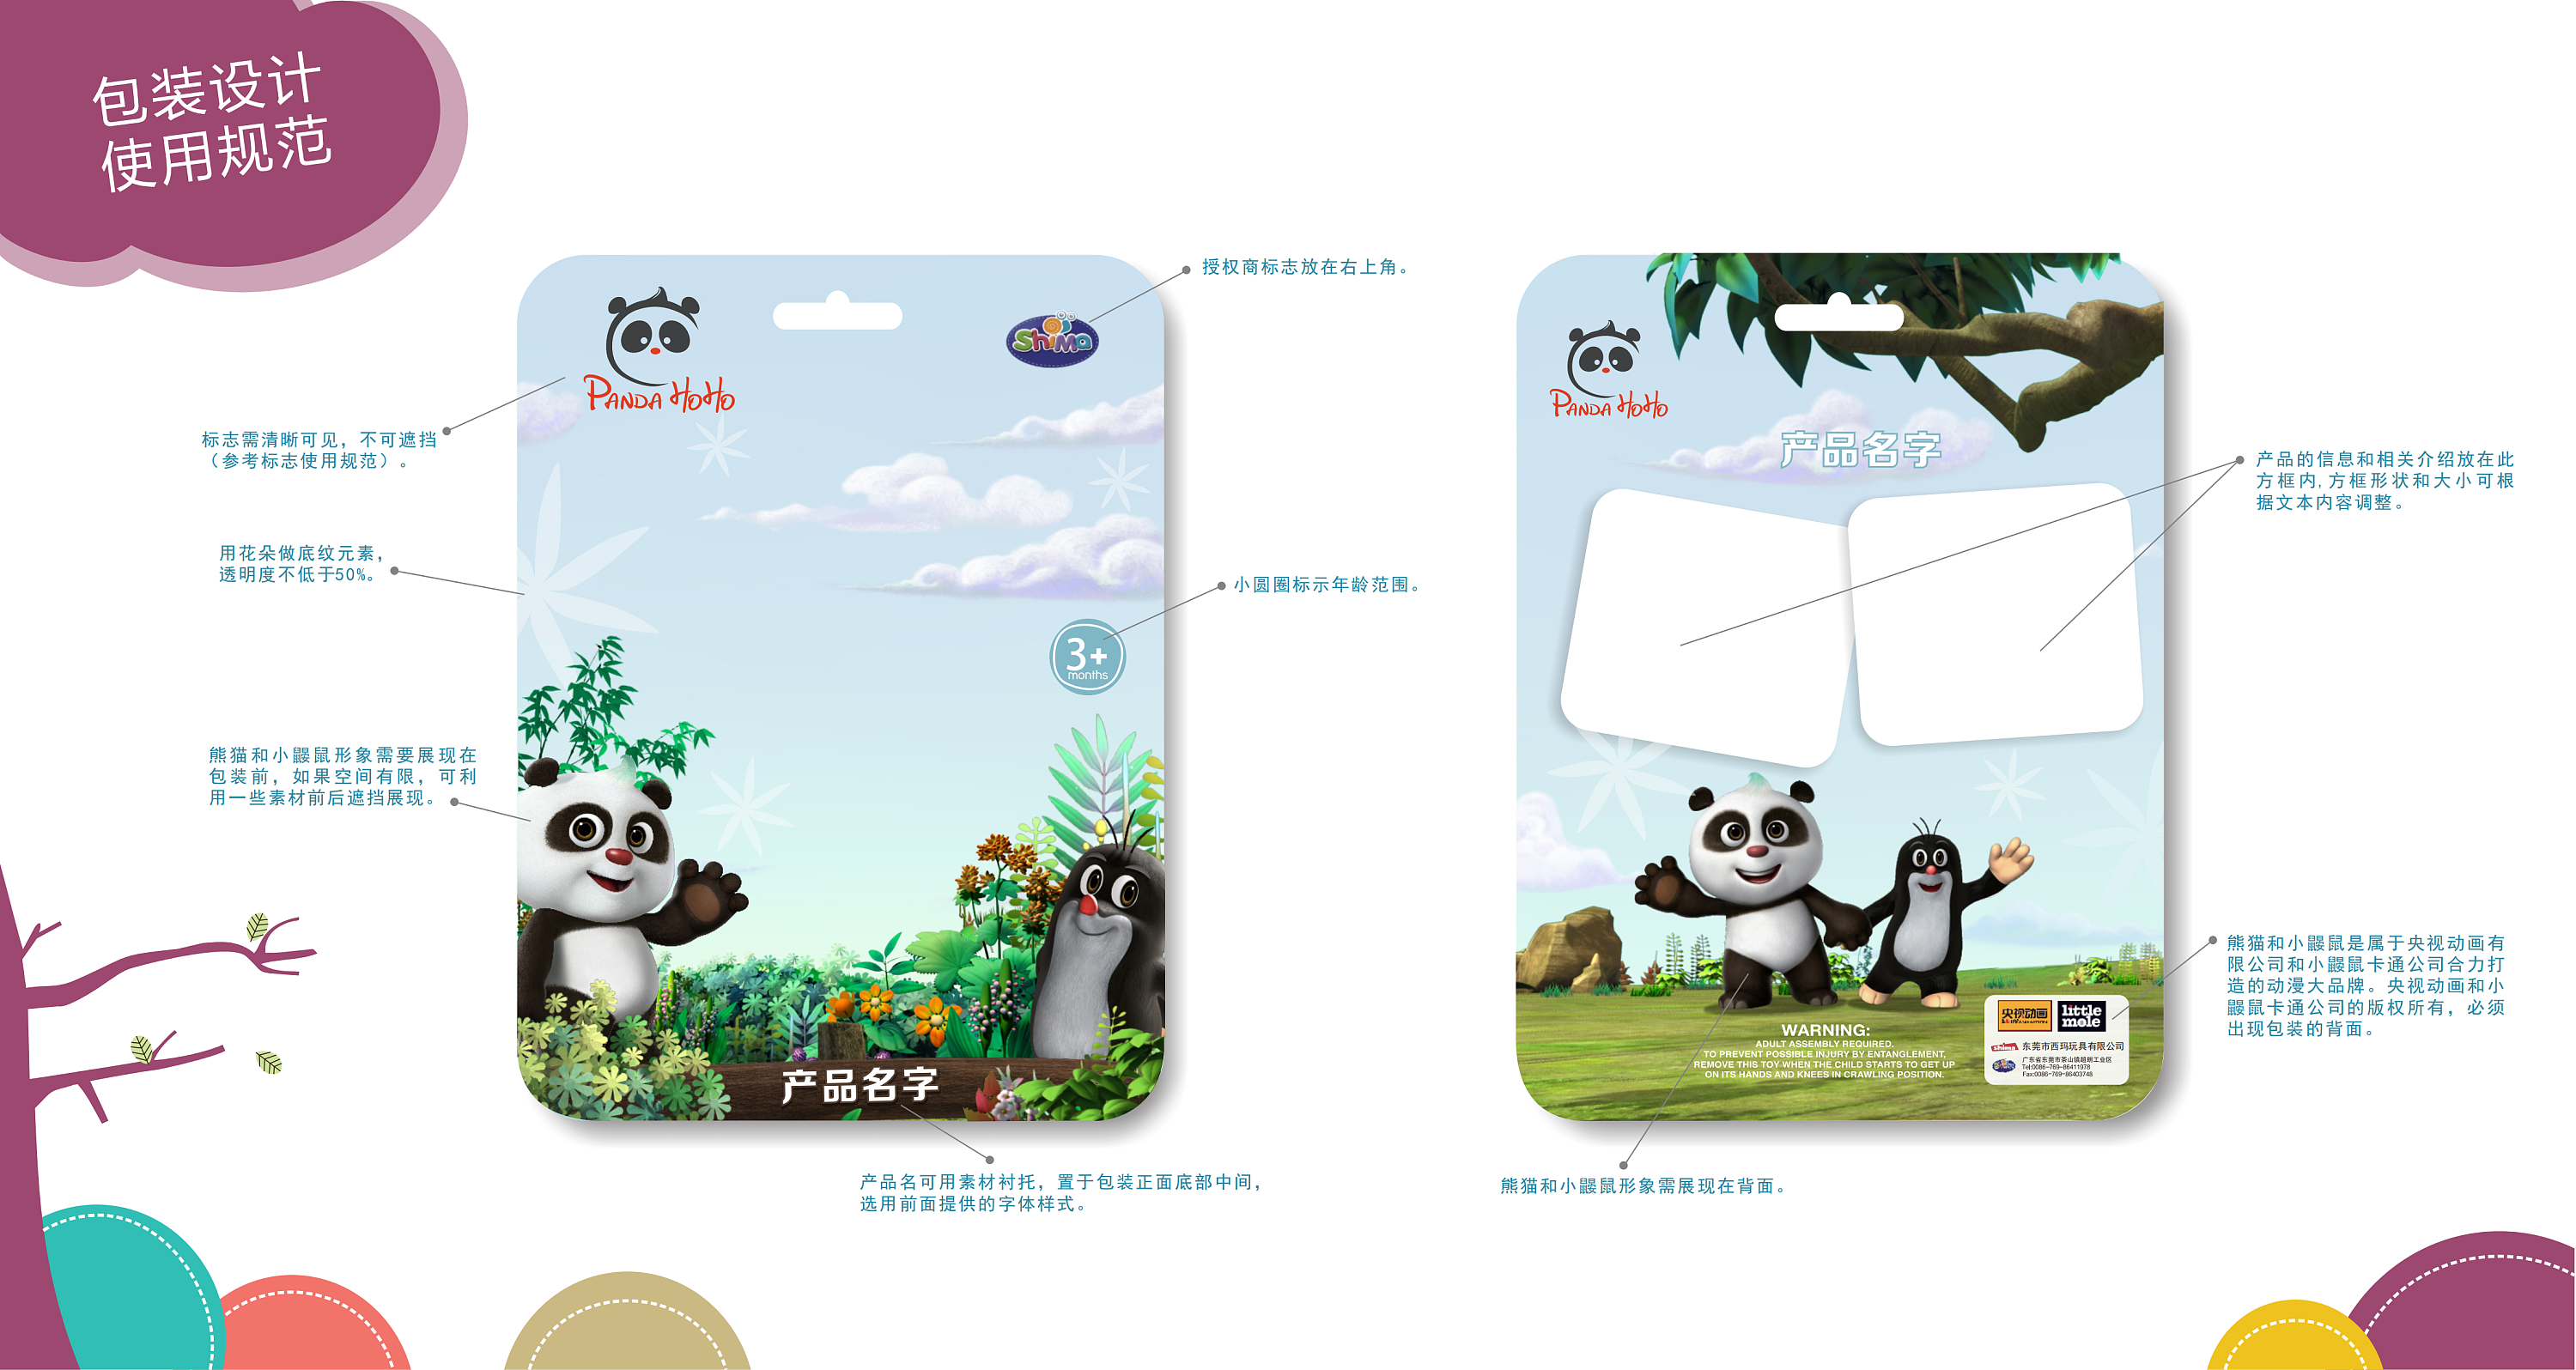 熊猫和小鼹鼠的图片19 看漫画